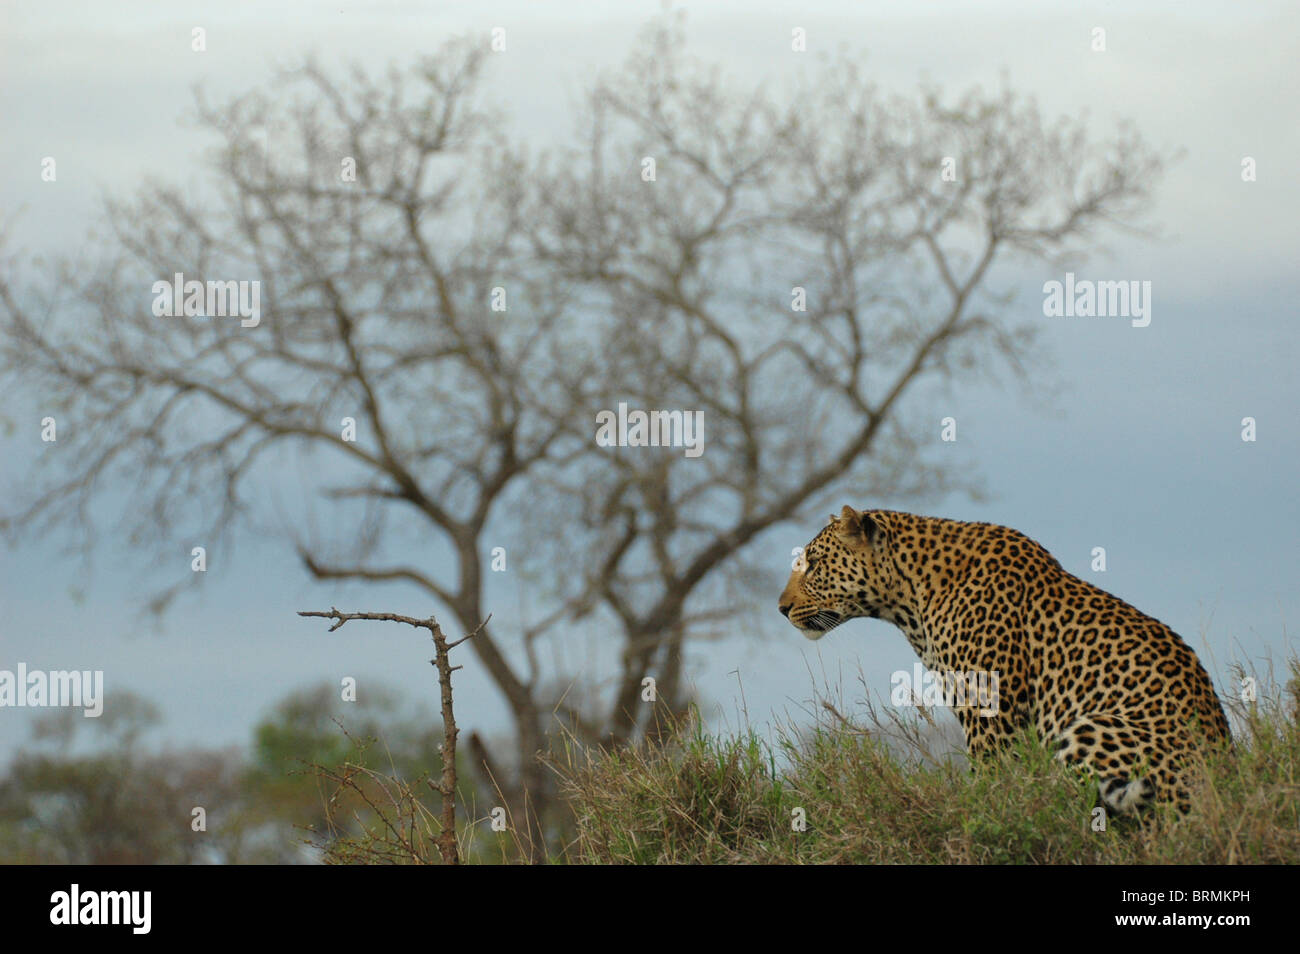 Vista panorámica de un leopardo mirando fijamente hacia adelante Foto de stock